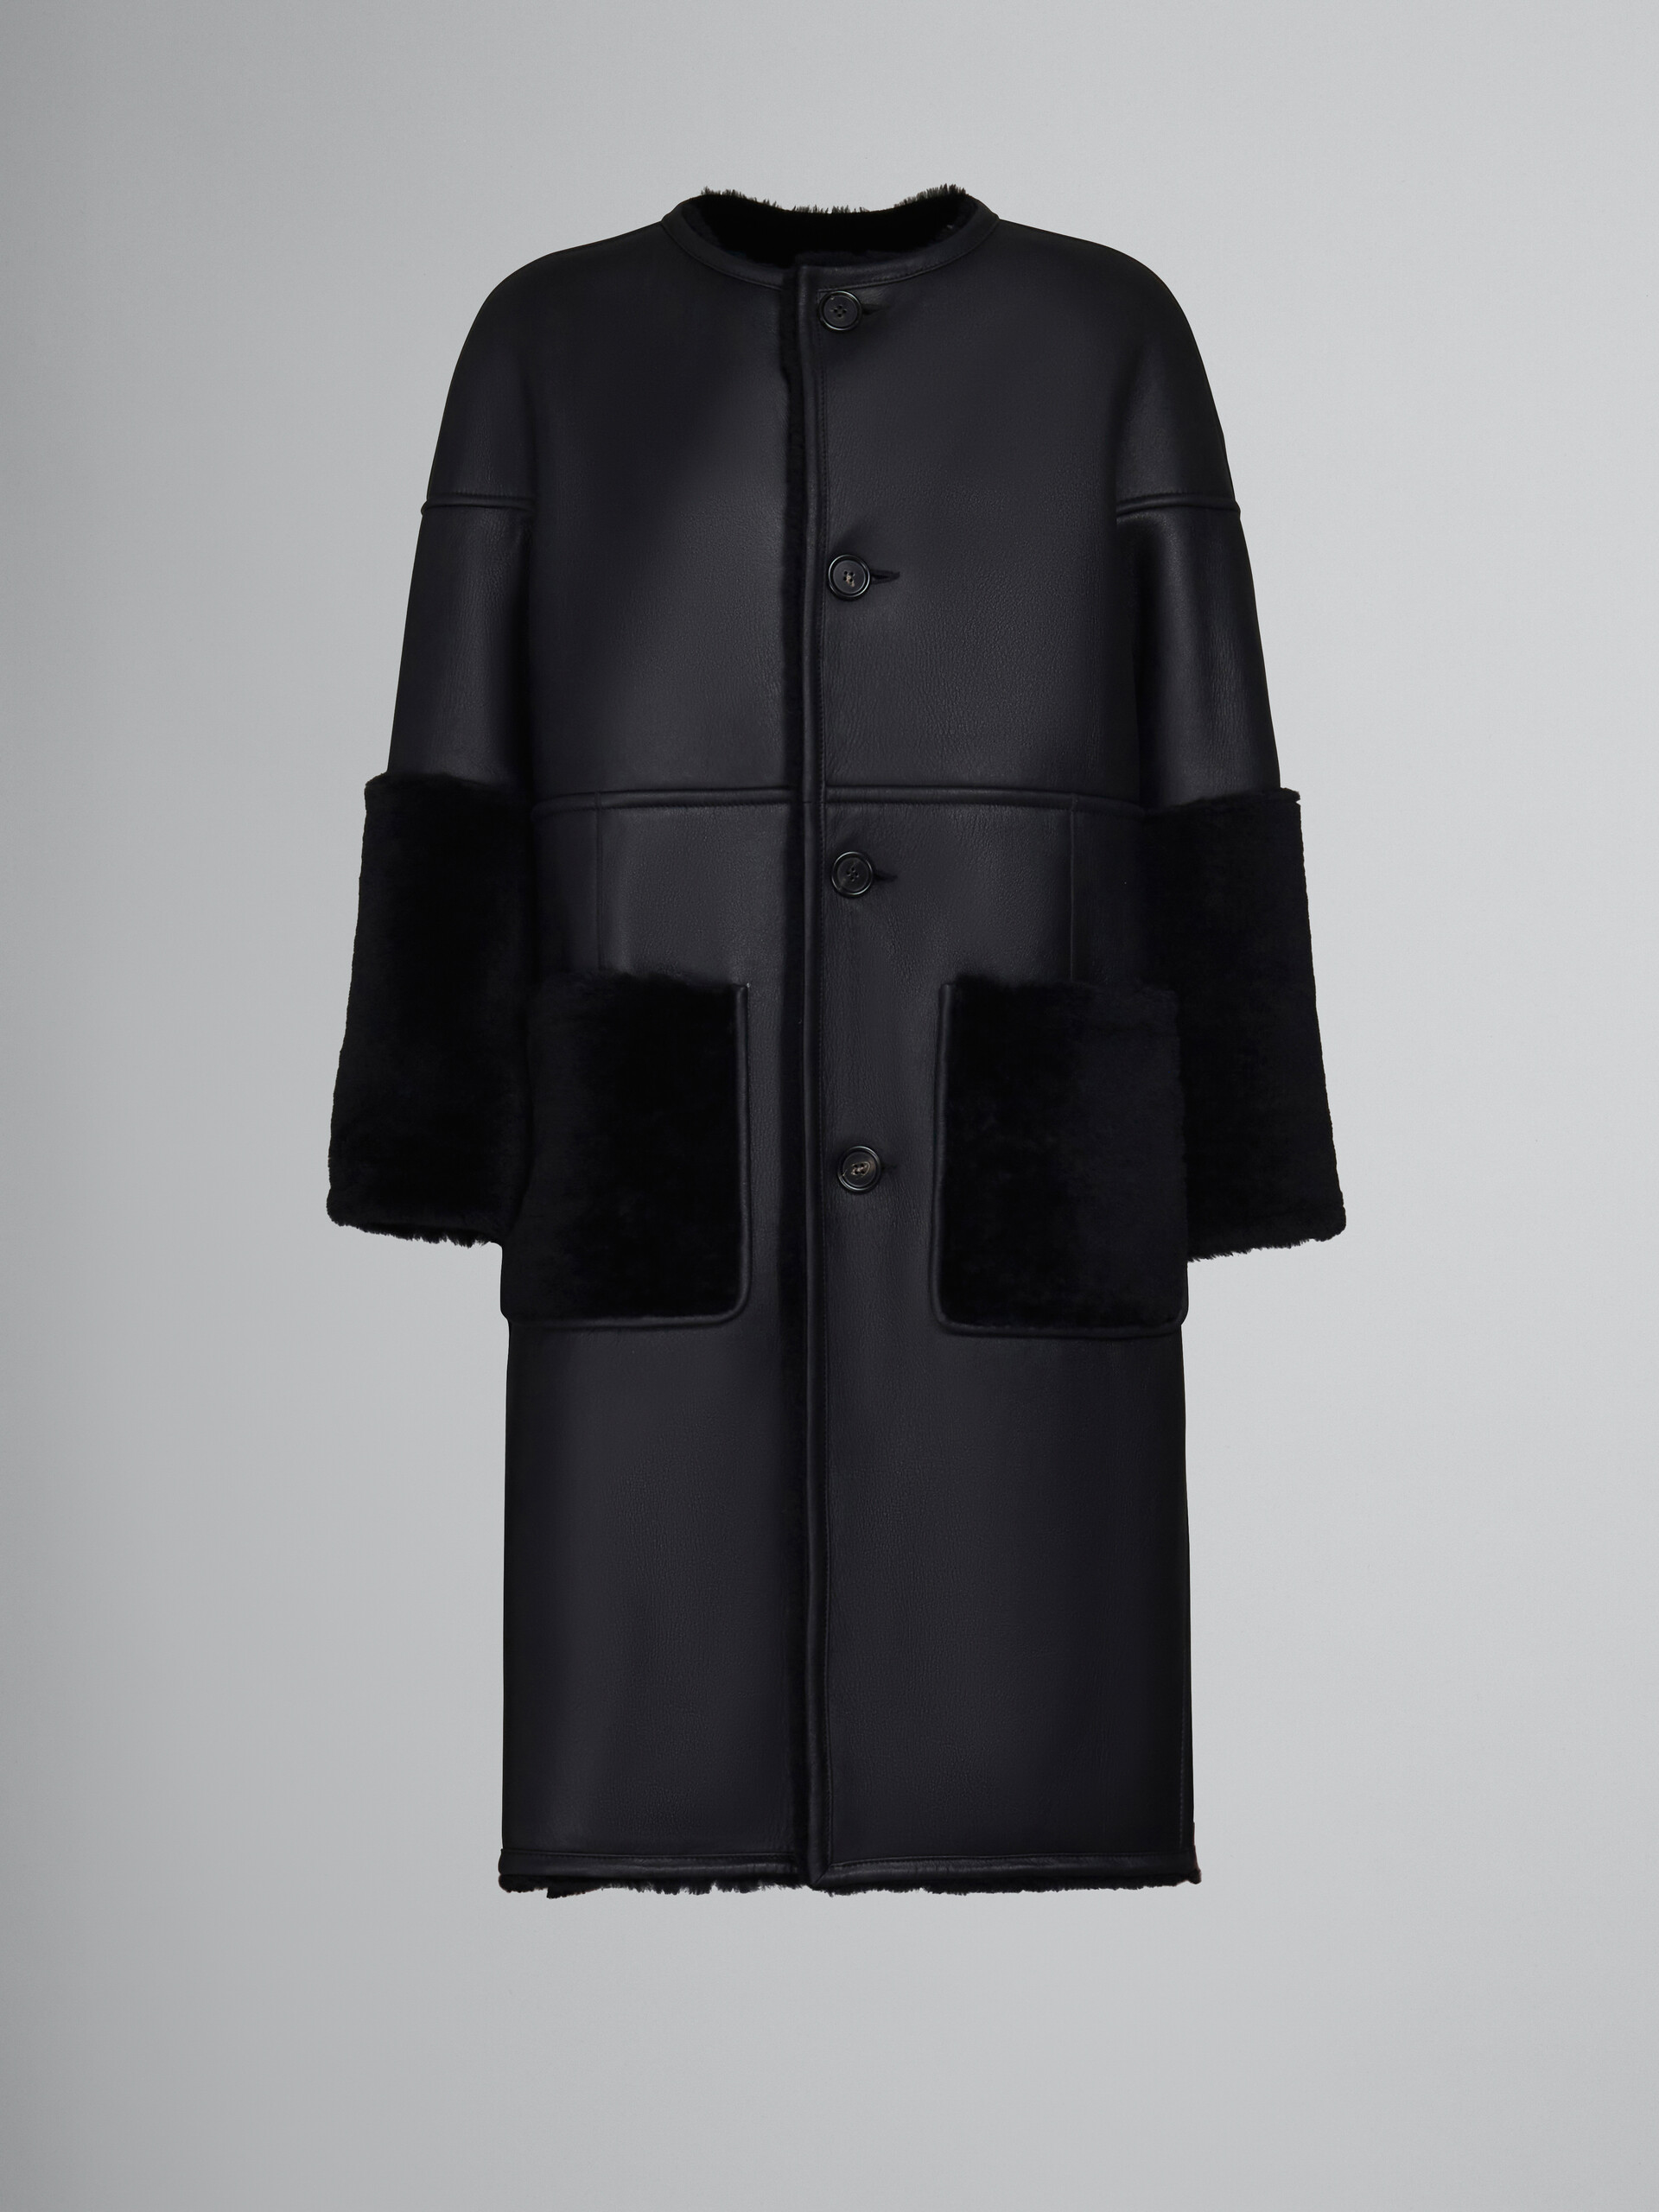 Manteau réversible en shearling noir - Vestes - Image 1